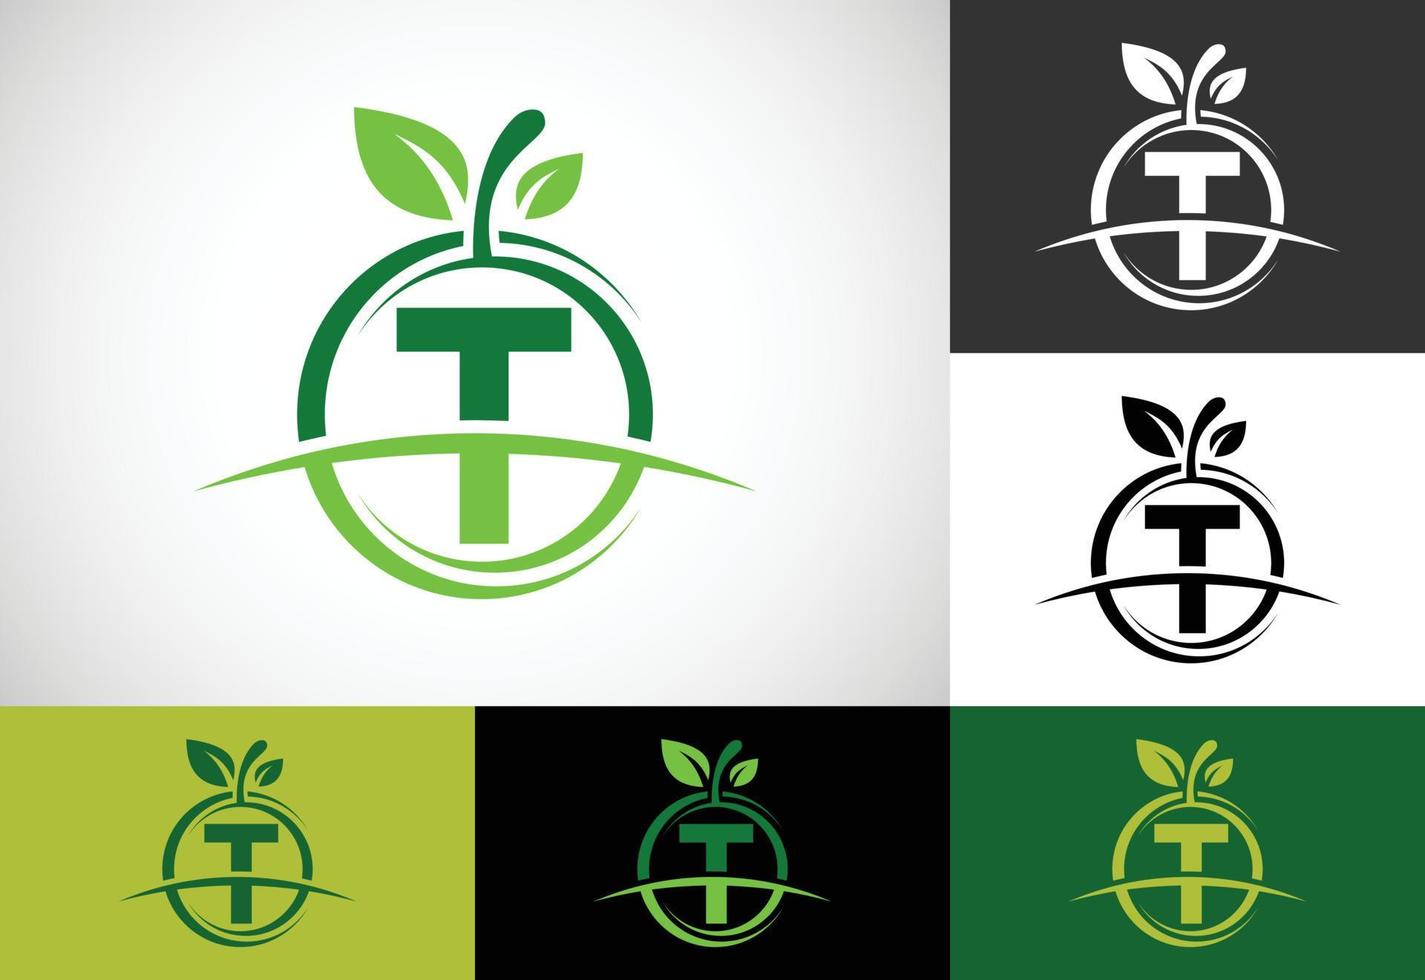 alfabeto inicial do monograma t com o logotipo abstrato da maçã. vetor de design de logotipo de comida saudável